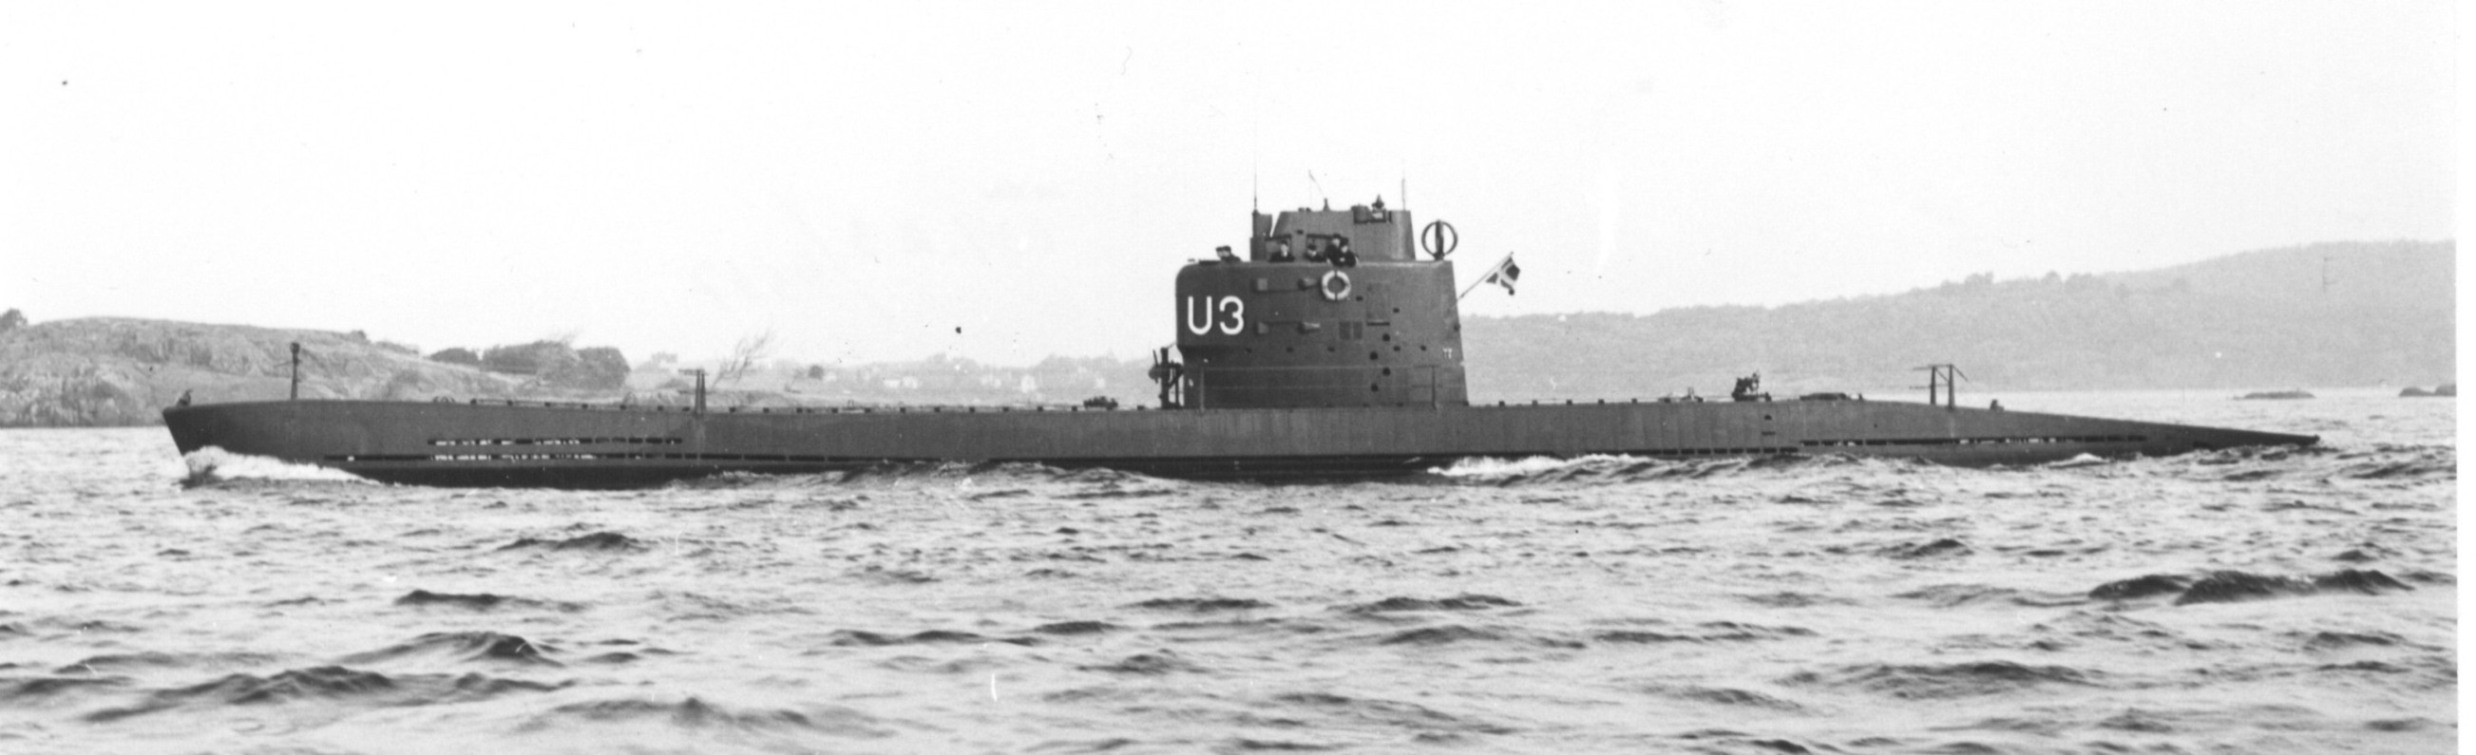 Submarine U3 Surfaced routine,